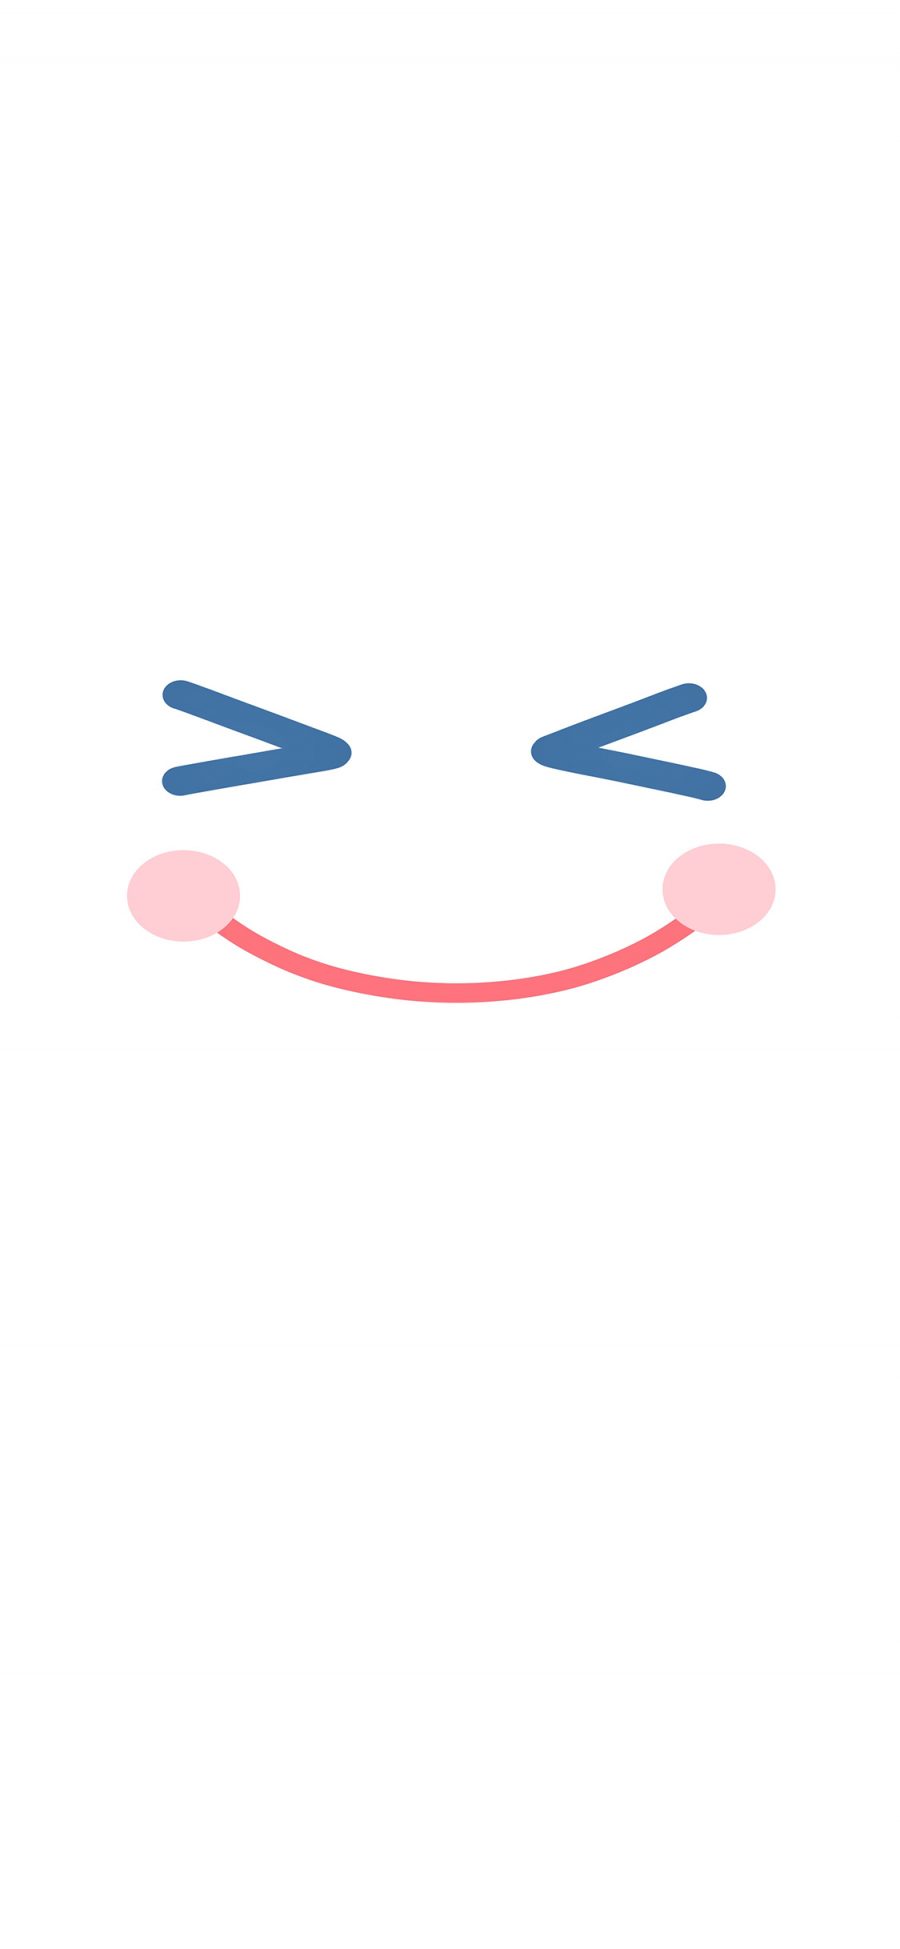 [2436×1125]笑脸 表情 白色 微笑 苹果手机动漫壁纸图片